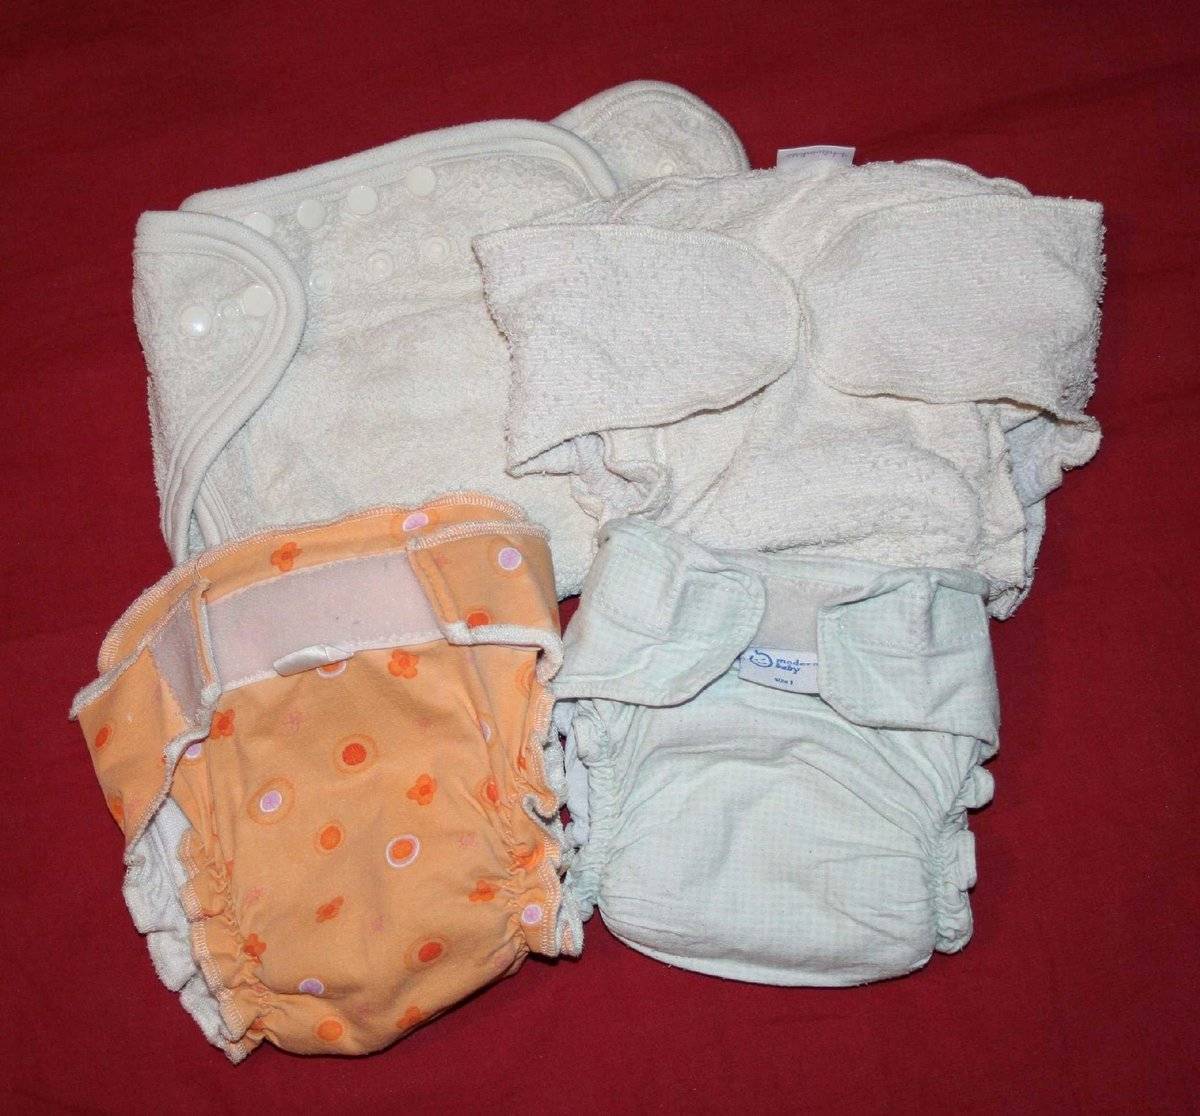 Как выбрать подгузники для новорожденных: устройство и виды